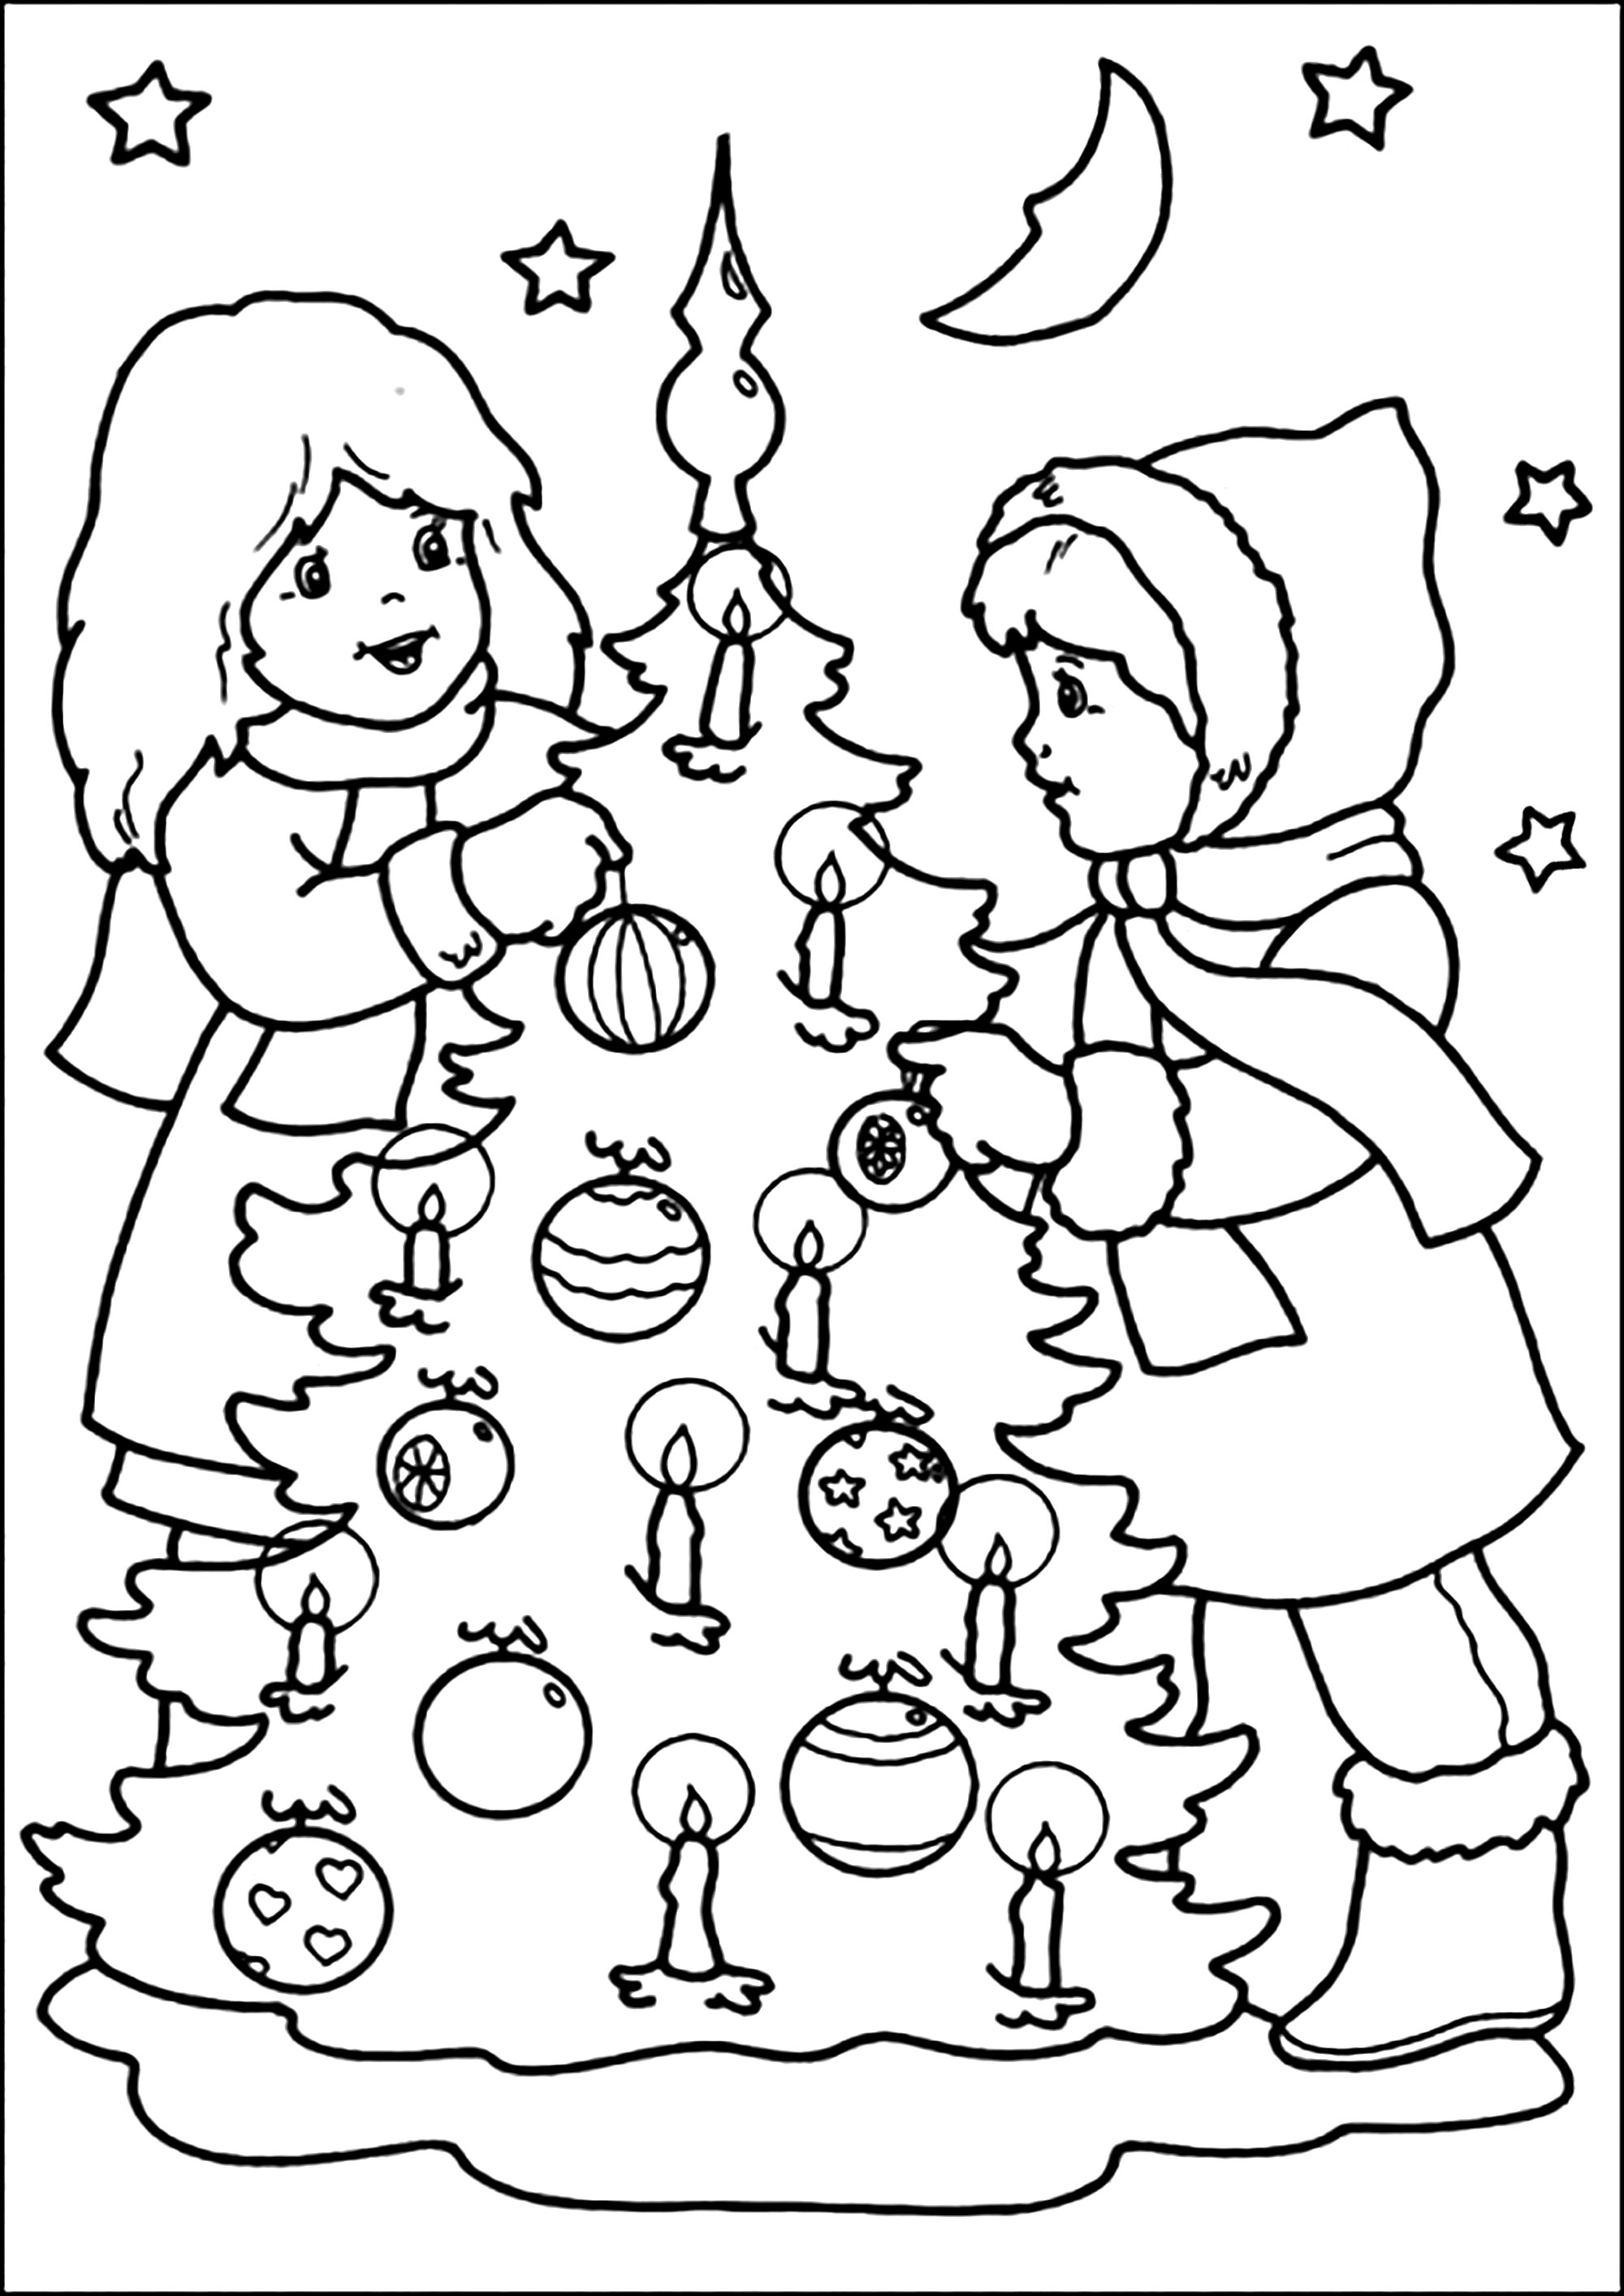 Página para colorir Natal vintage. Crianças a decorar uma árvore de Natal. Coloração muito retro!